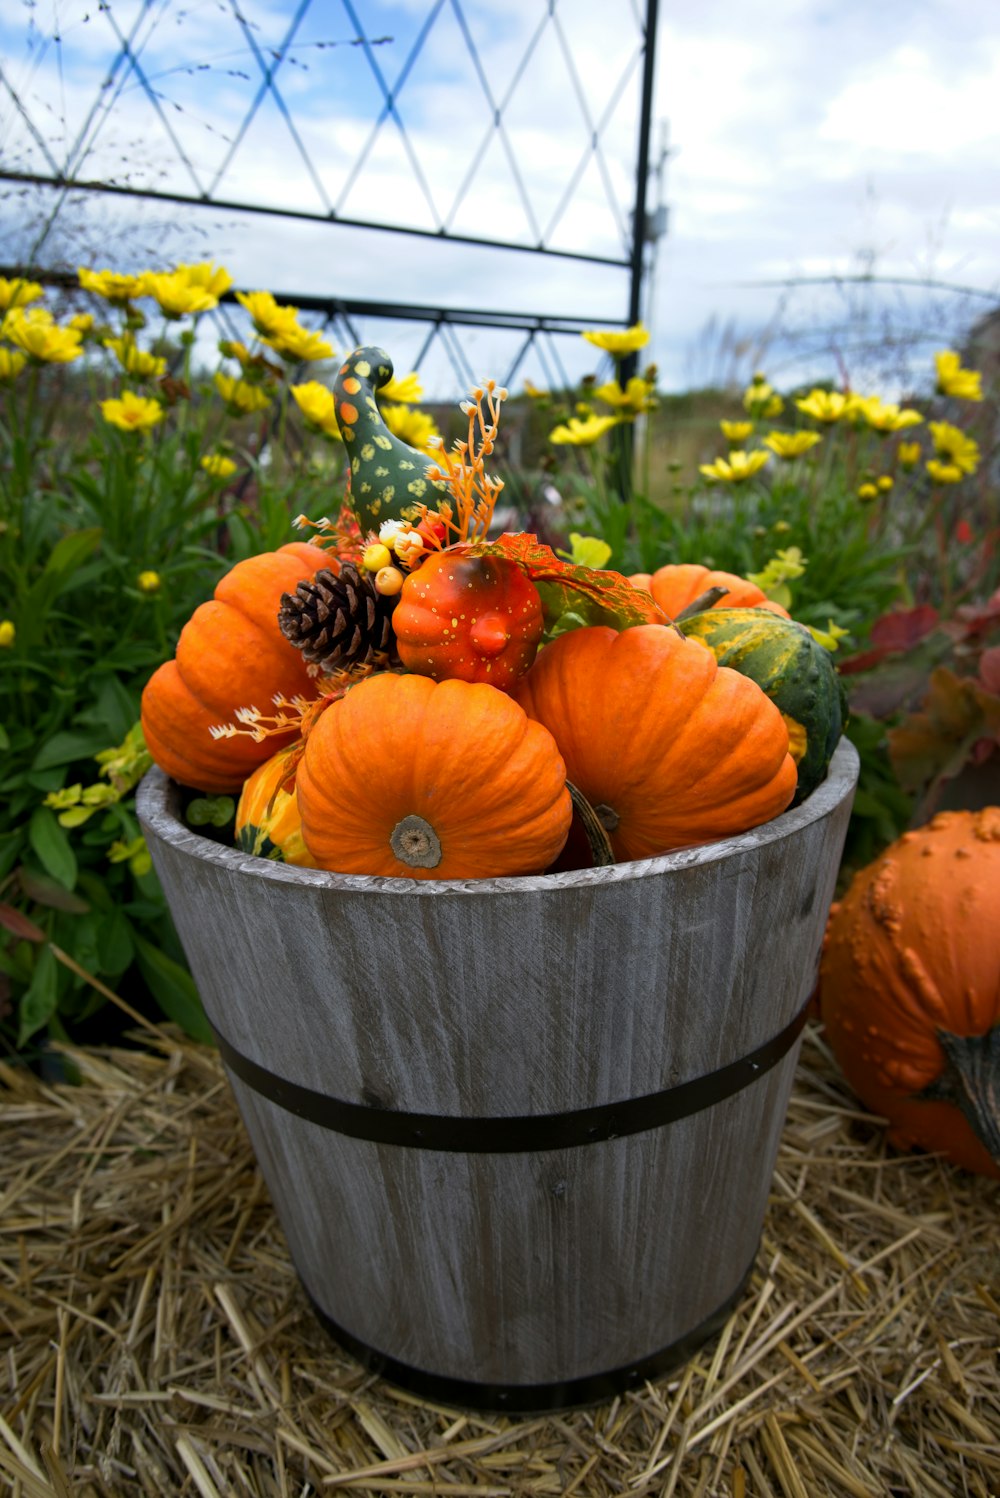 a bucket of pumpkins